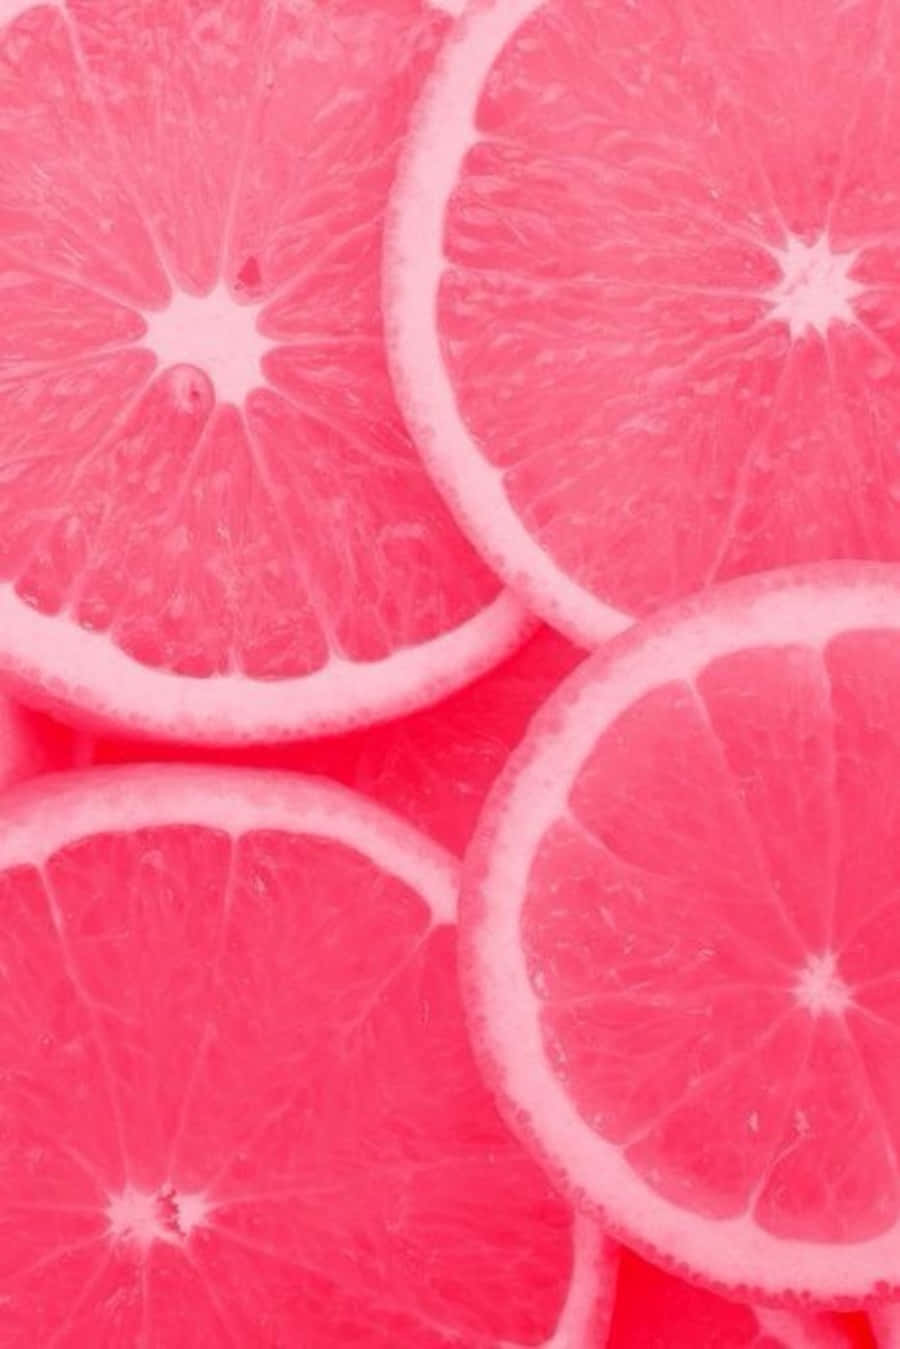 Juicy Pink Grapefruit Slice Wallpaper